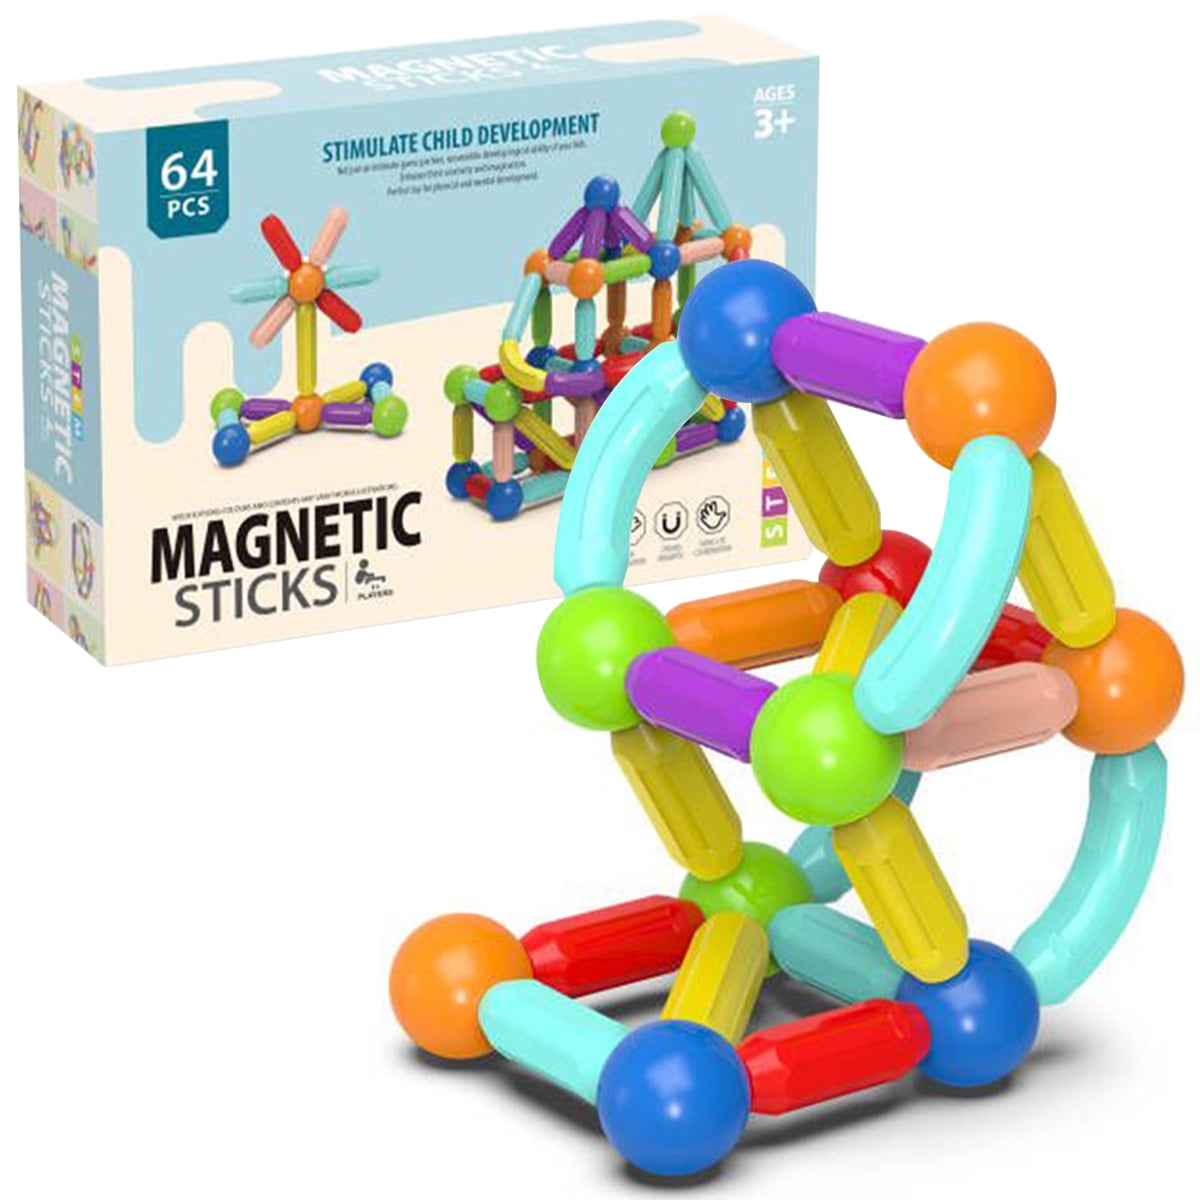 64Pcs Magnetic Building Blocks Kids Building Tile Set for Imagination Skill 